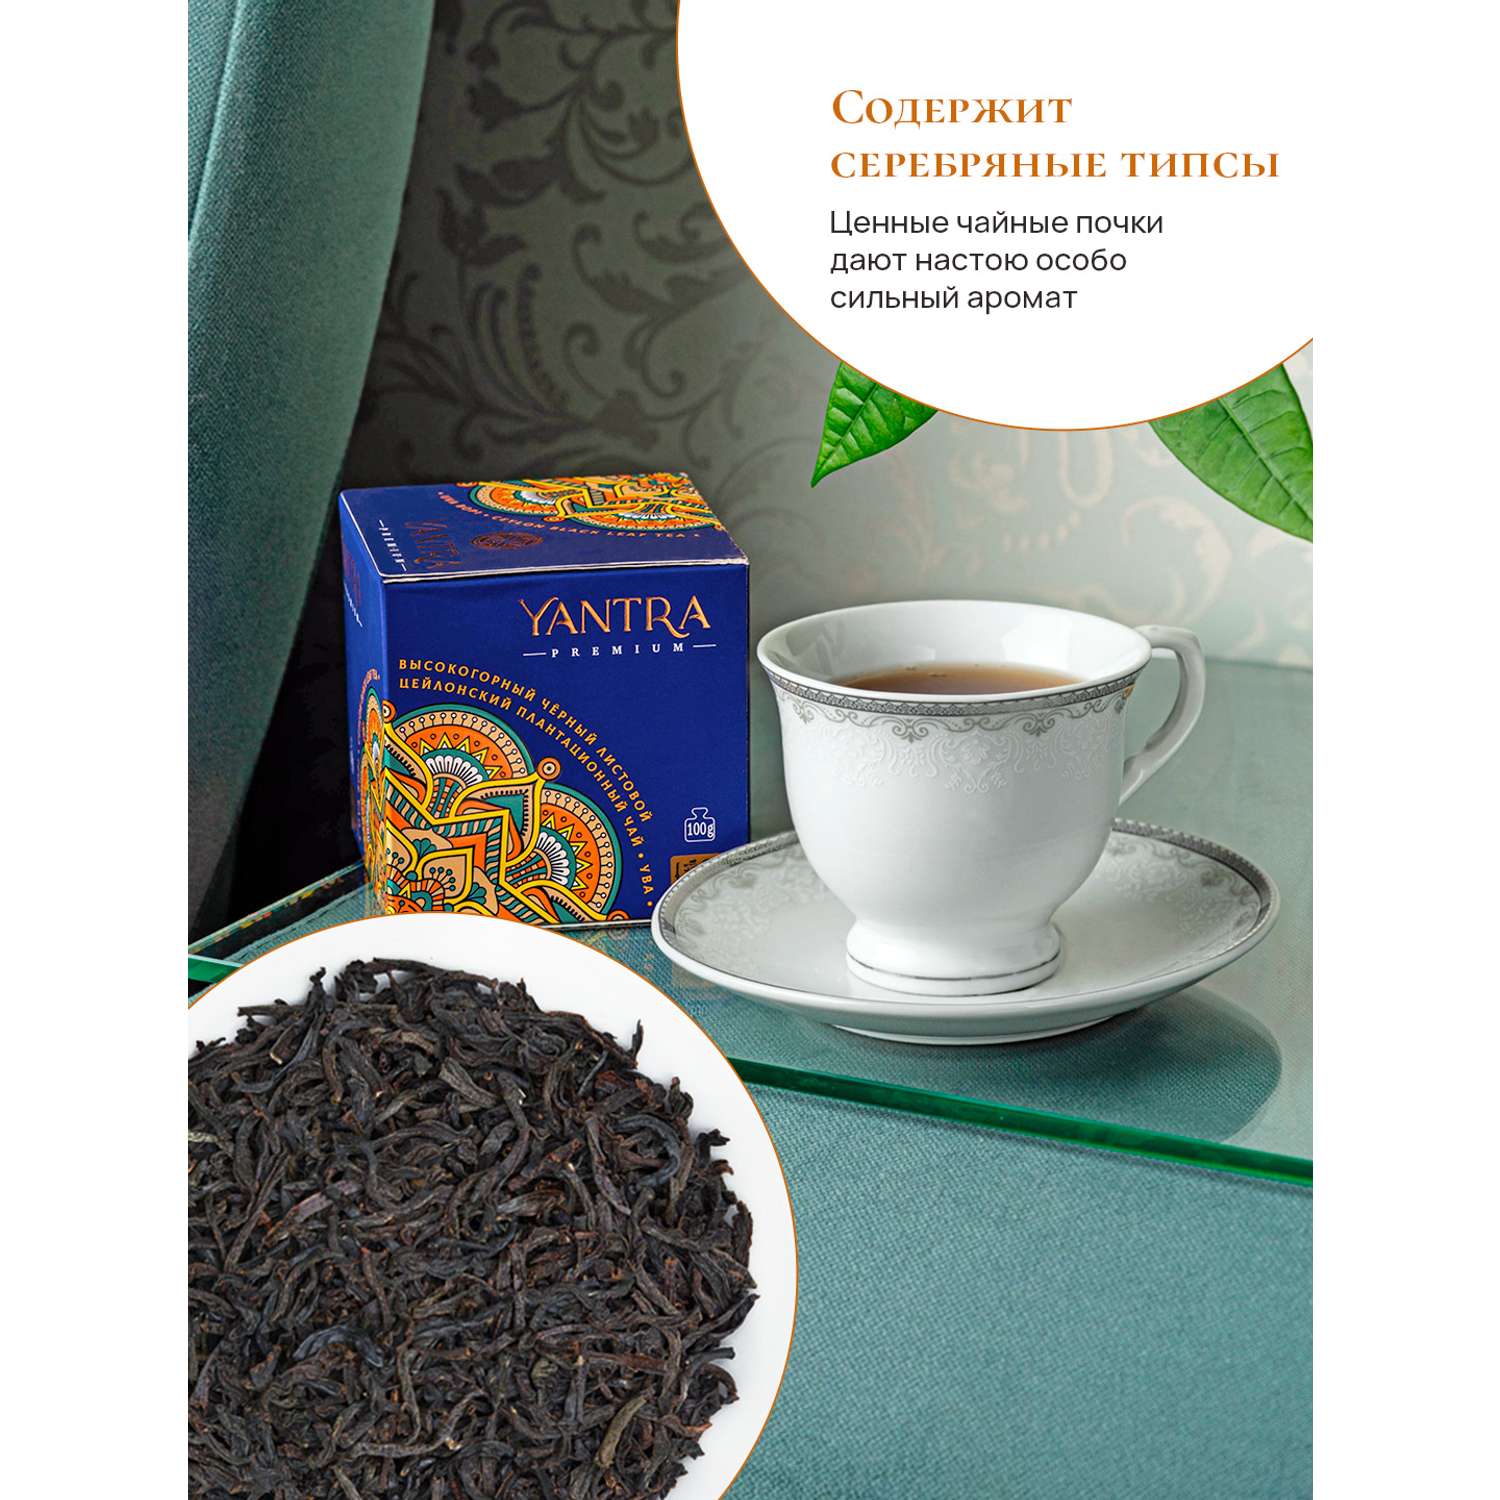 Чай Премиум Yantra чёрный листовой стандарт BOP1 плантация Ува 100 г - фото 3